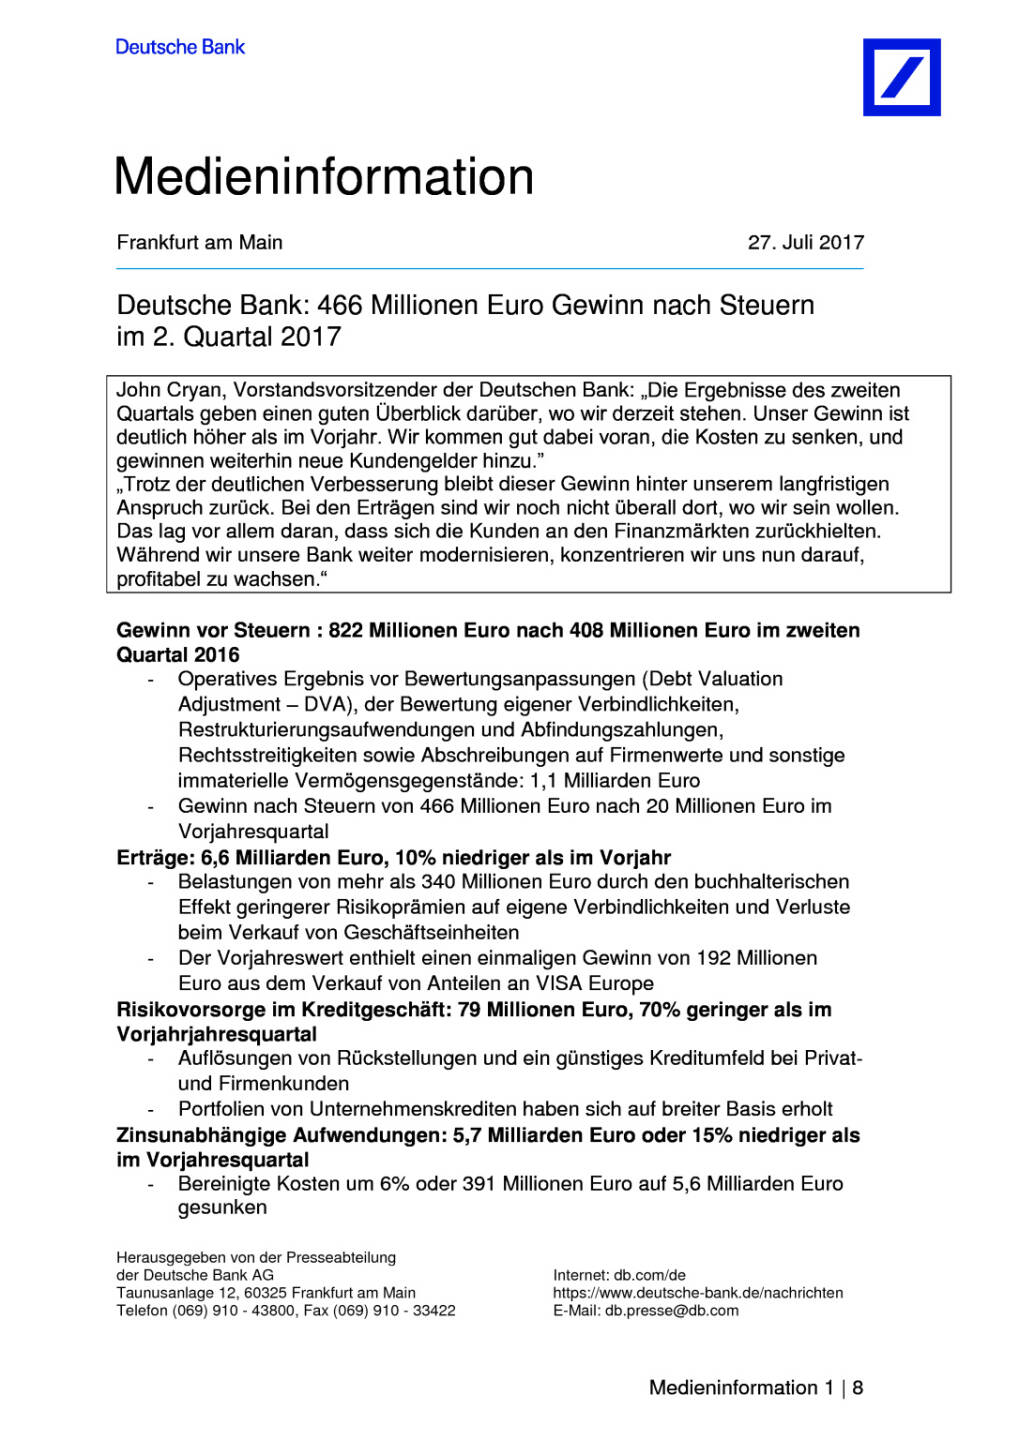 Deutsche Bank: Q2 bringt 466 Mio. Euro Gewinn nach Steuern, Seite 1/8, komplettes Dokument unter http://boerse-social.com/static/uploads/file_2297_deutsche_bank_q2_bringt_466_mio_euro_gewinn_nach_steuern.pdf